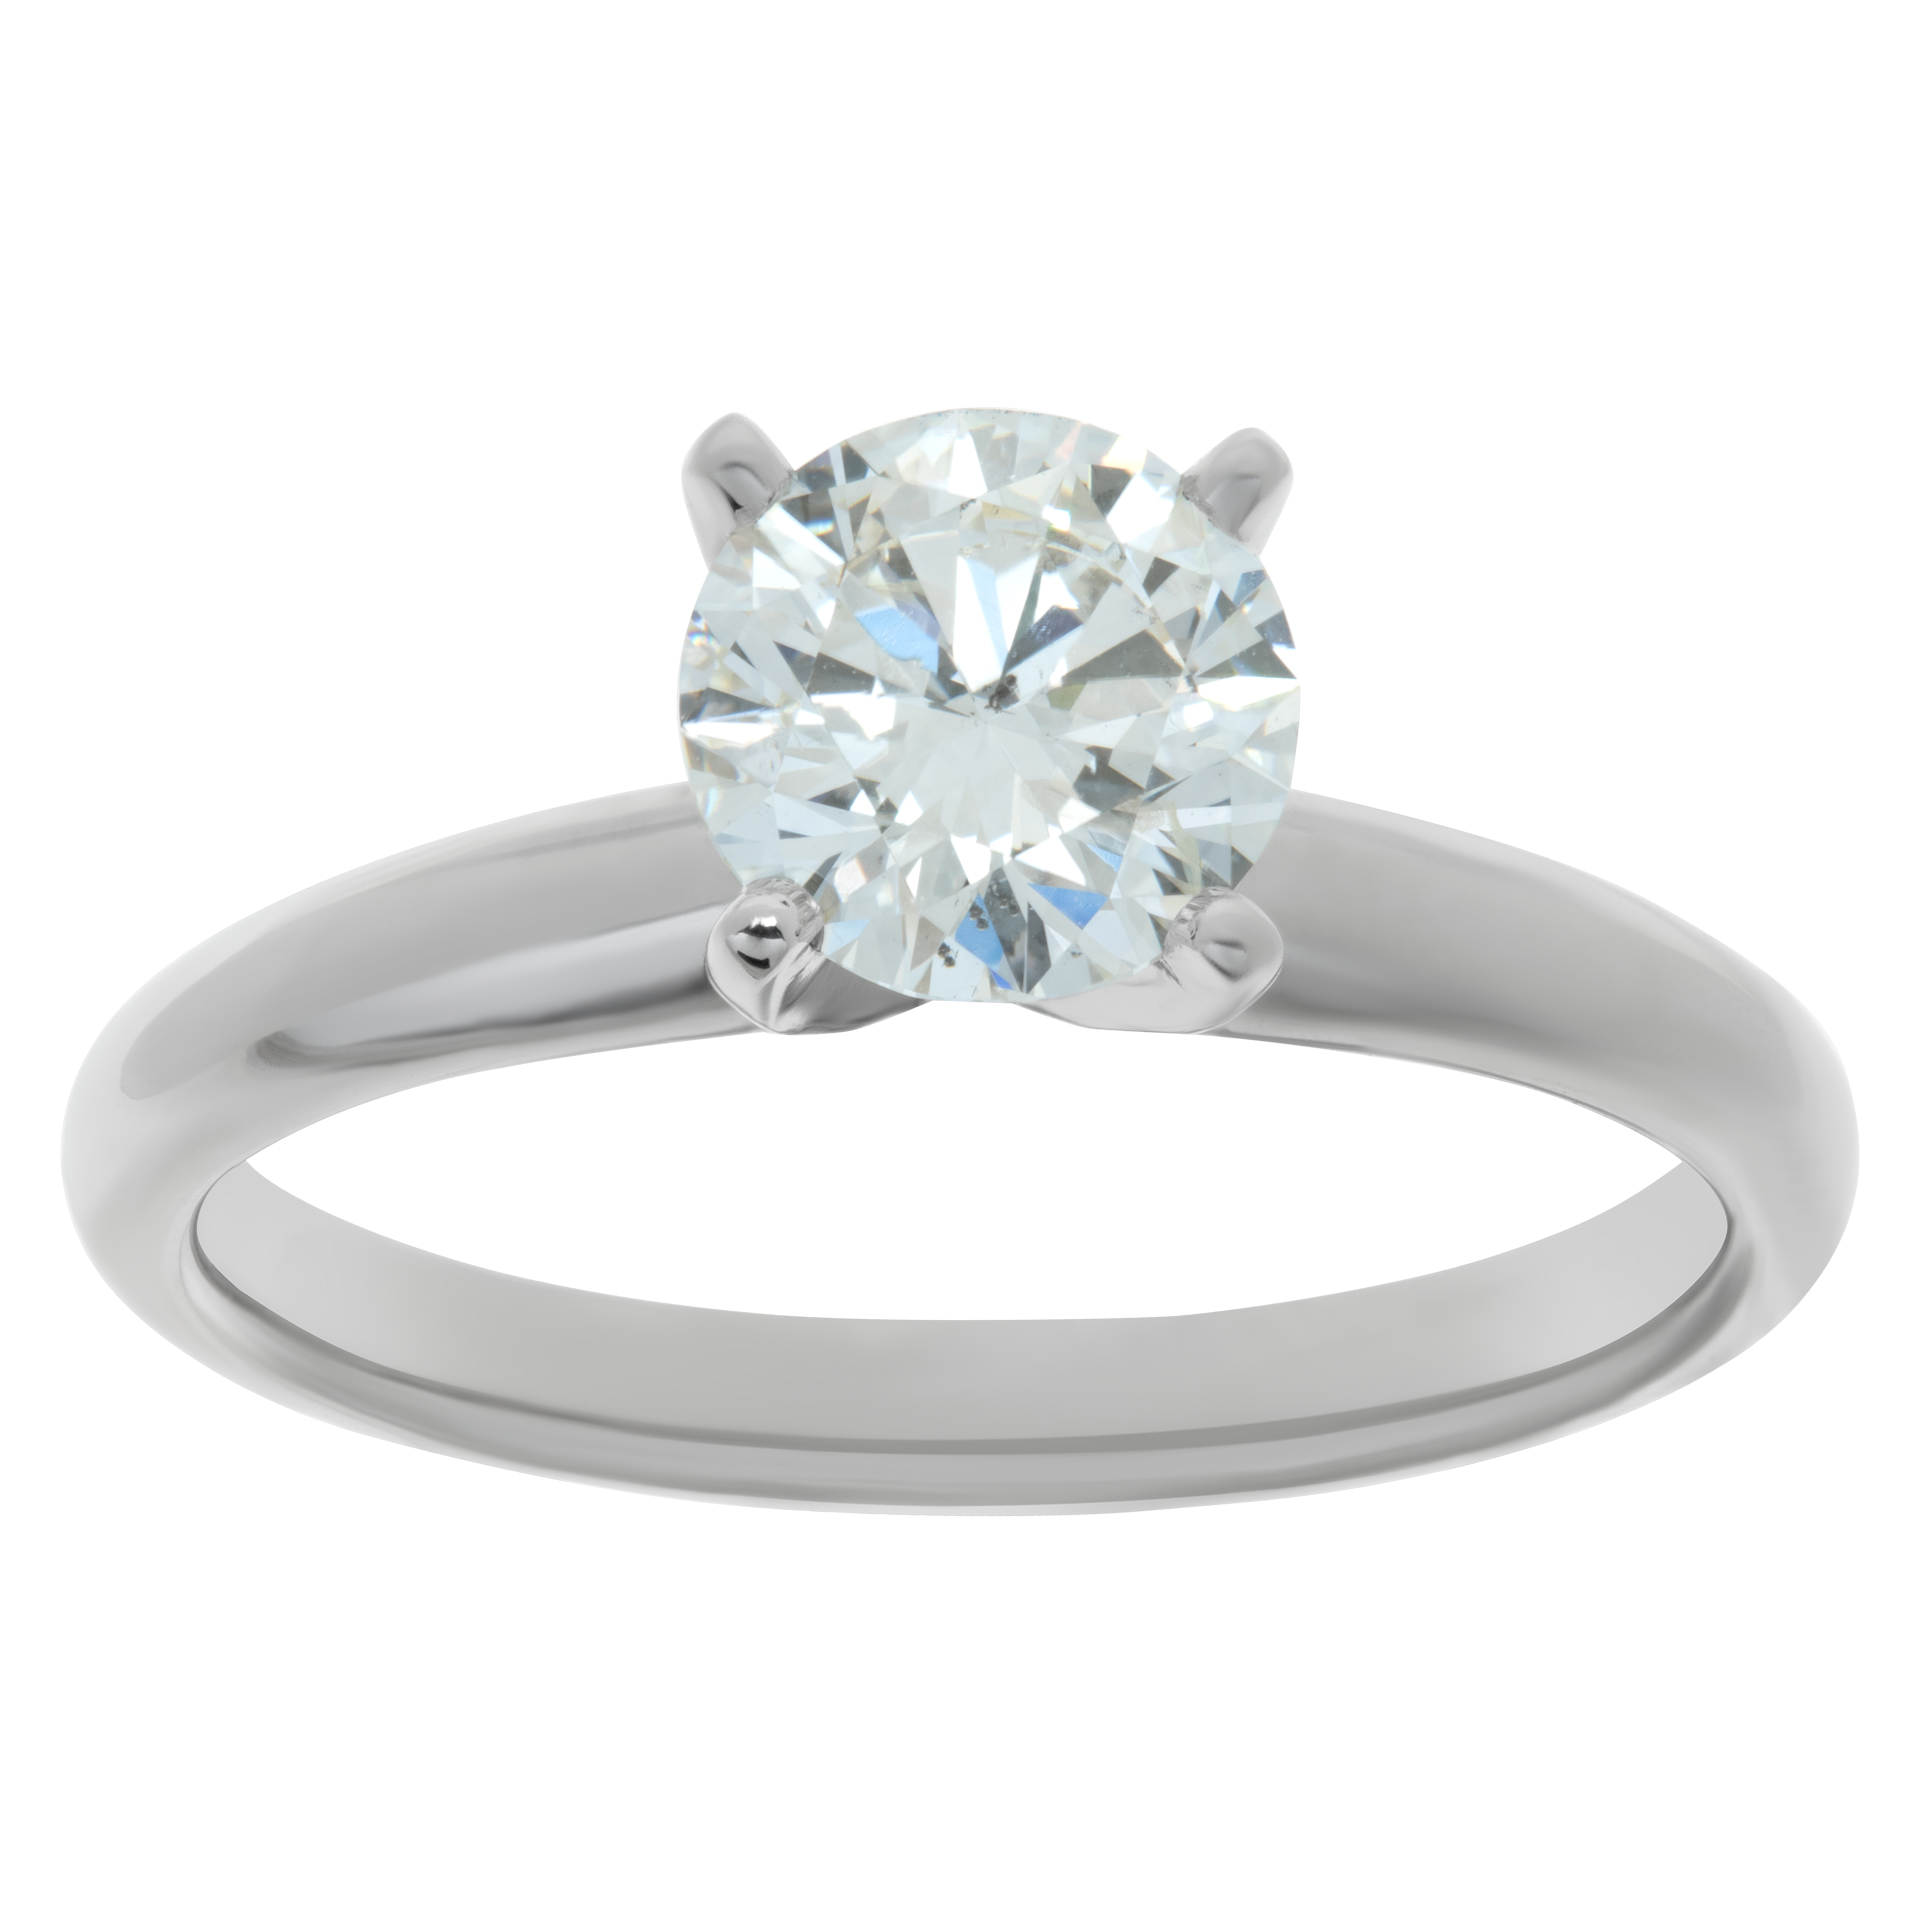 GIA certified round brilliant cut diamond 1.14 carat (H color, I1 clarity, Excellent cut, Excellent polish, Excellent symmetry)